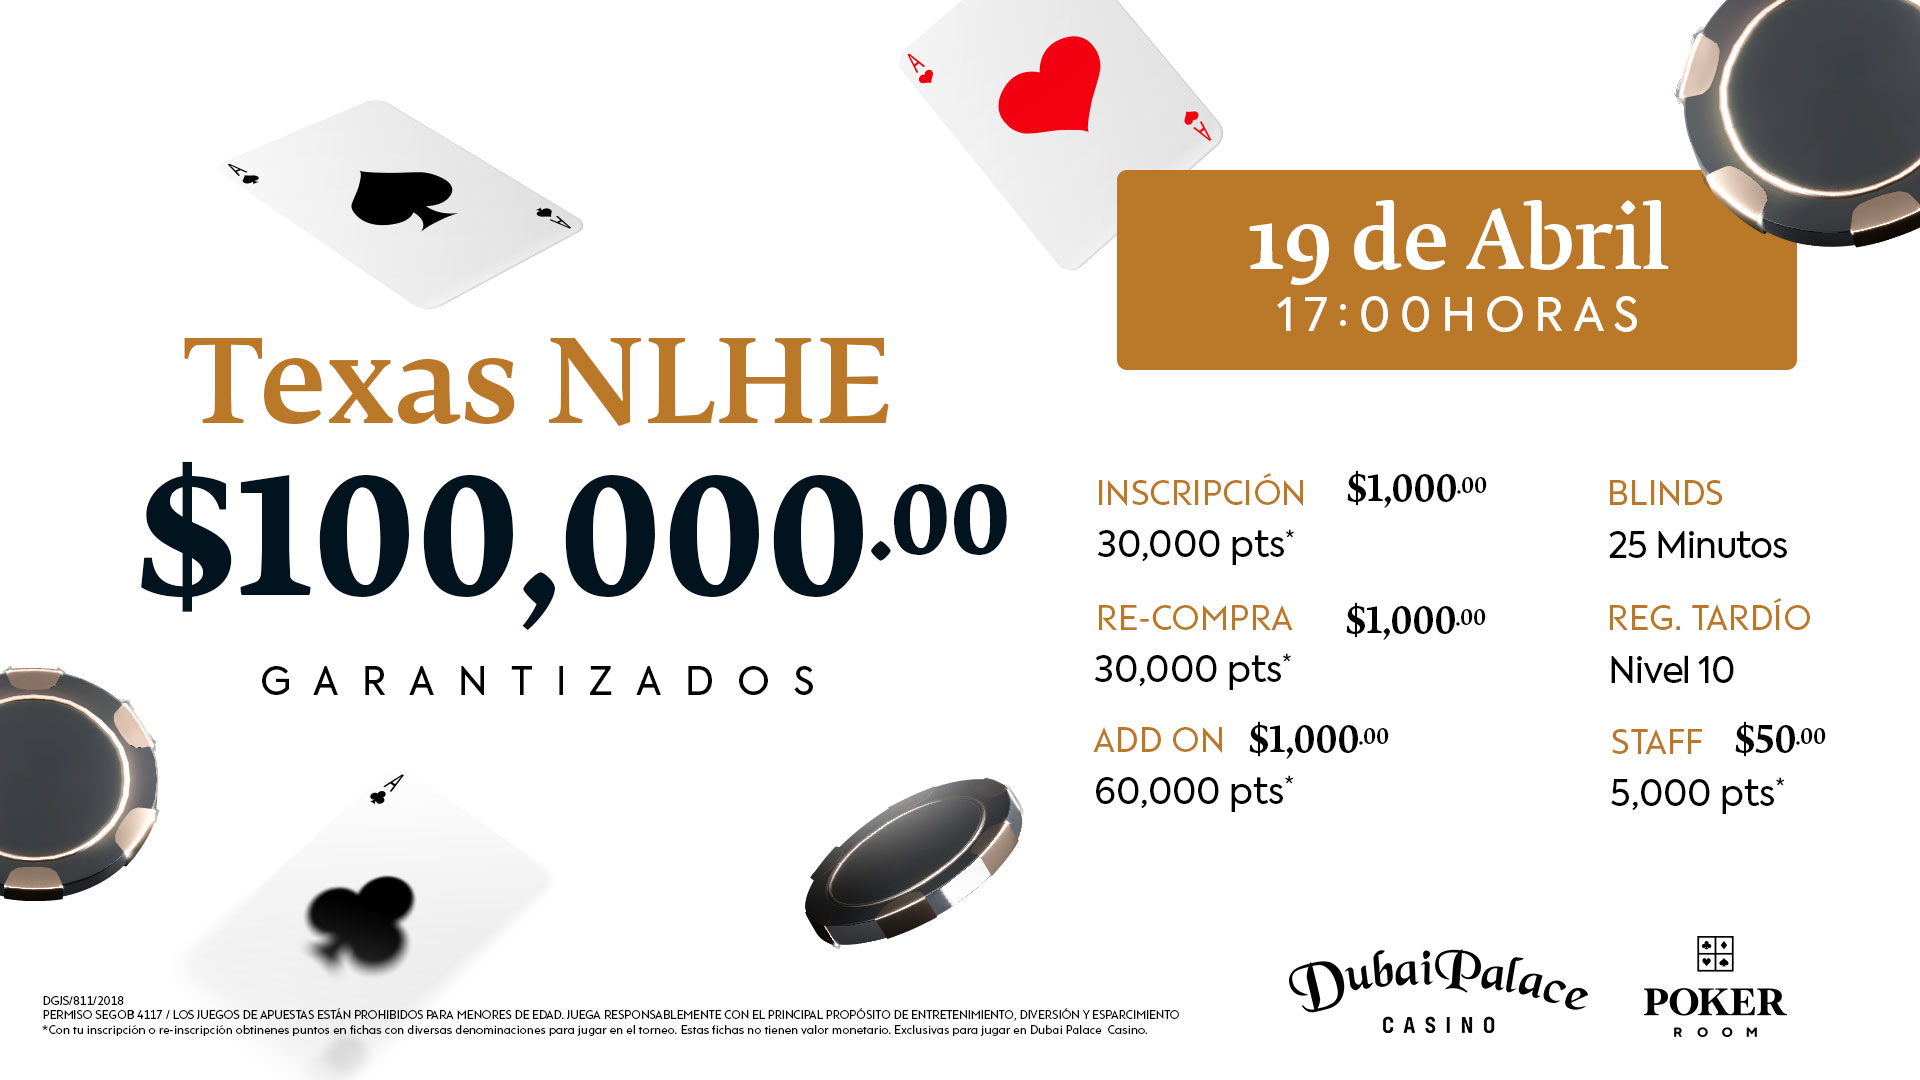  Torneo Texas NLHE con $100,000 pesos garantizados